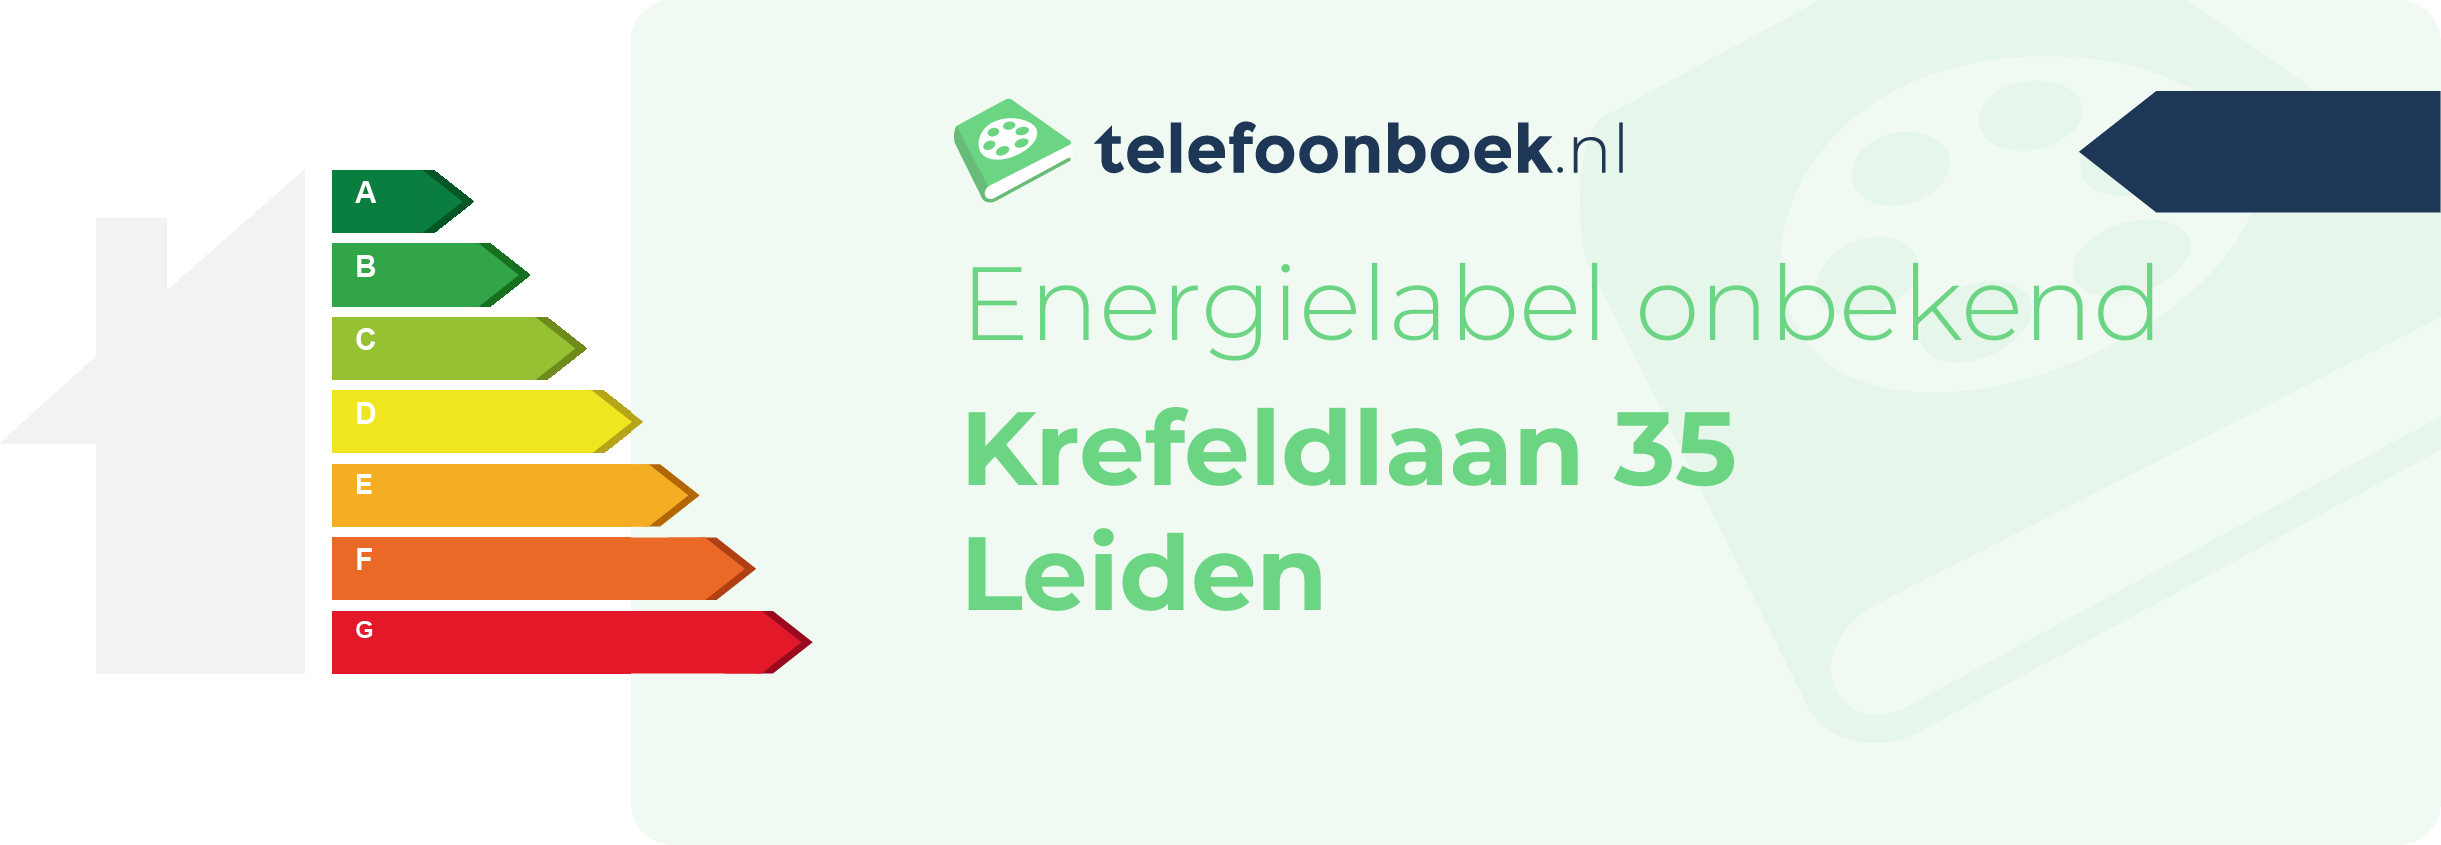 Energielabel Krefeldlaan 35 Leiden